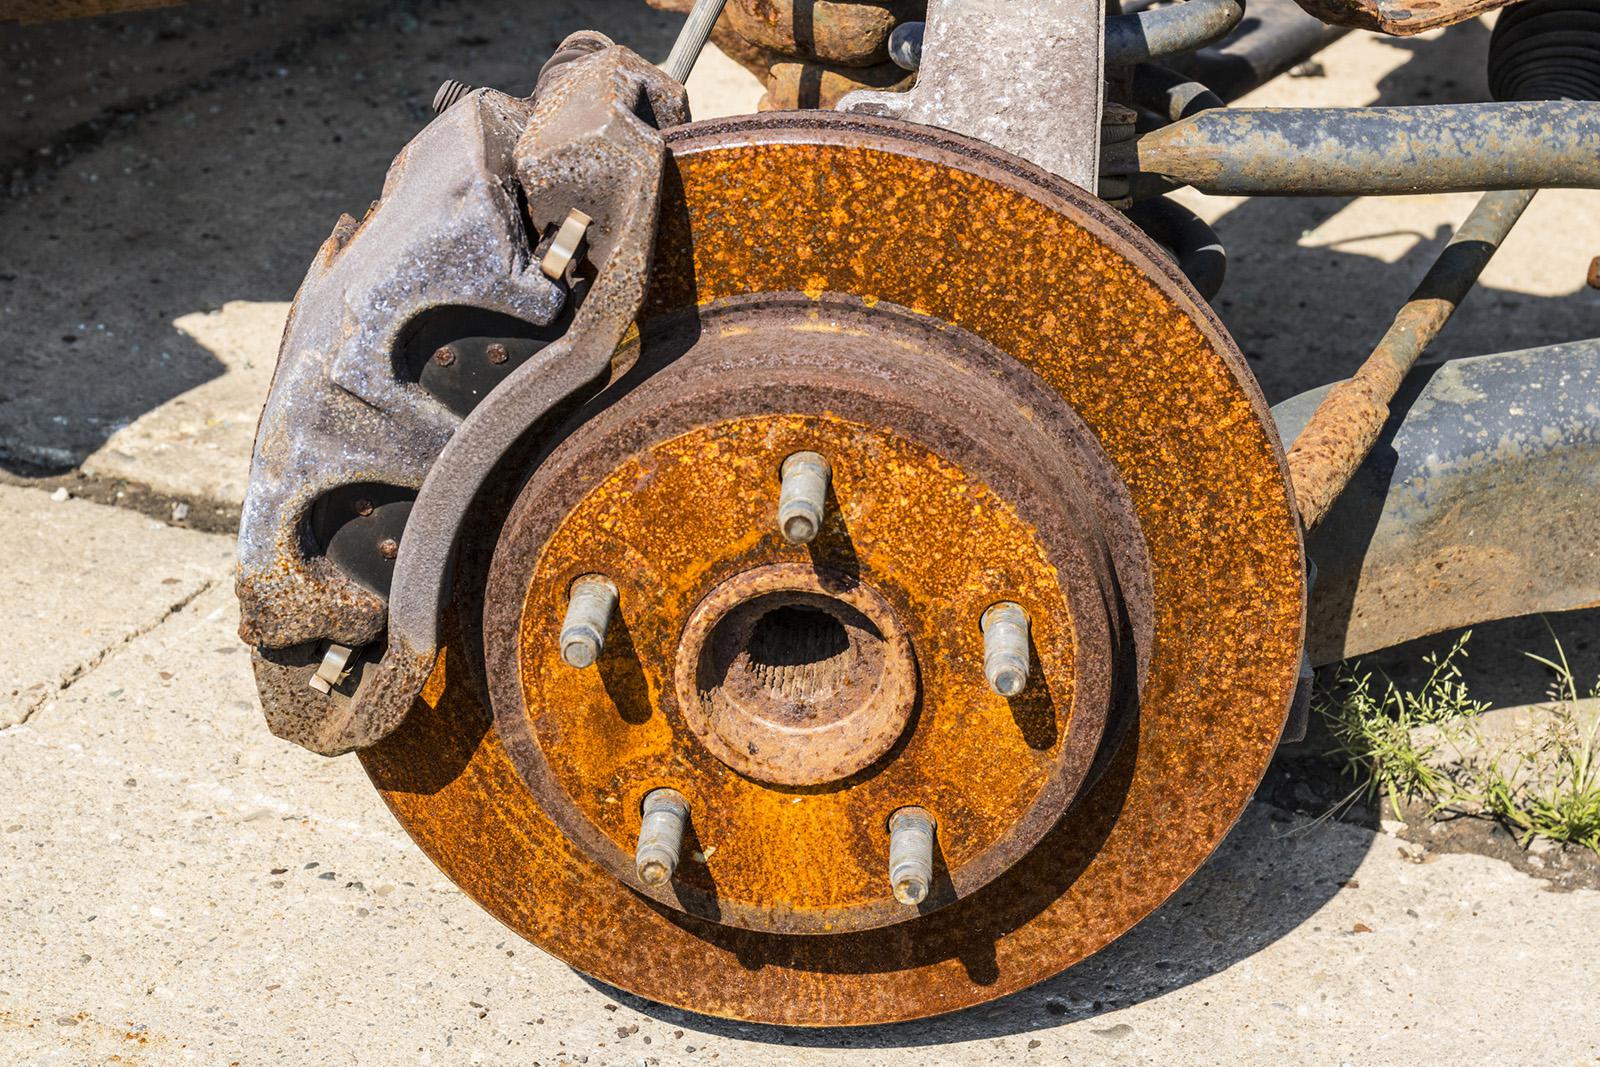 Ржавые диски на колесах что делать: ремонтировать или менять? — журнал За рулем